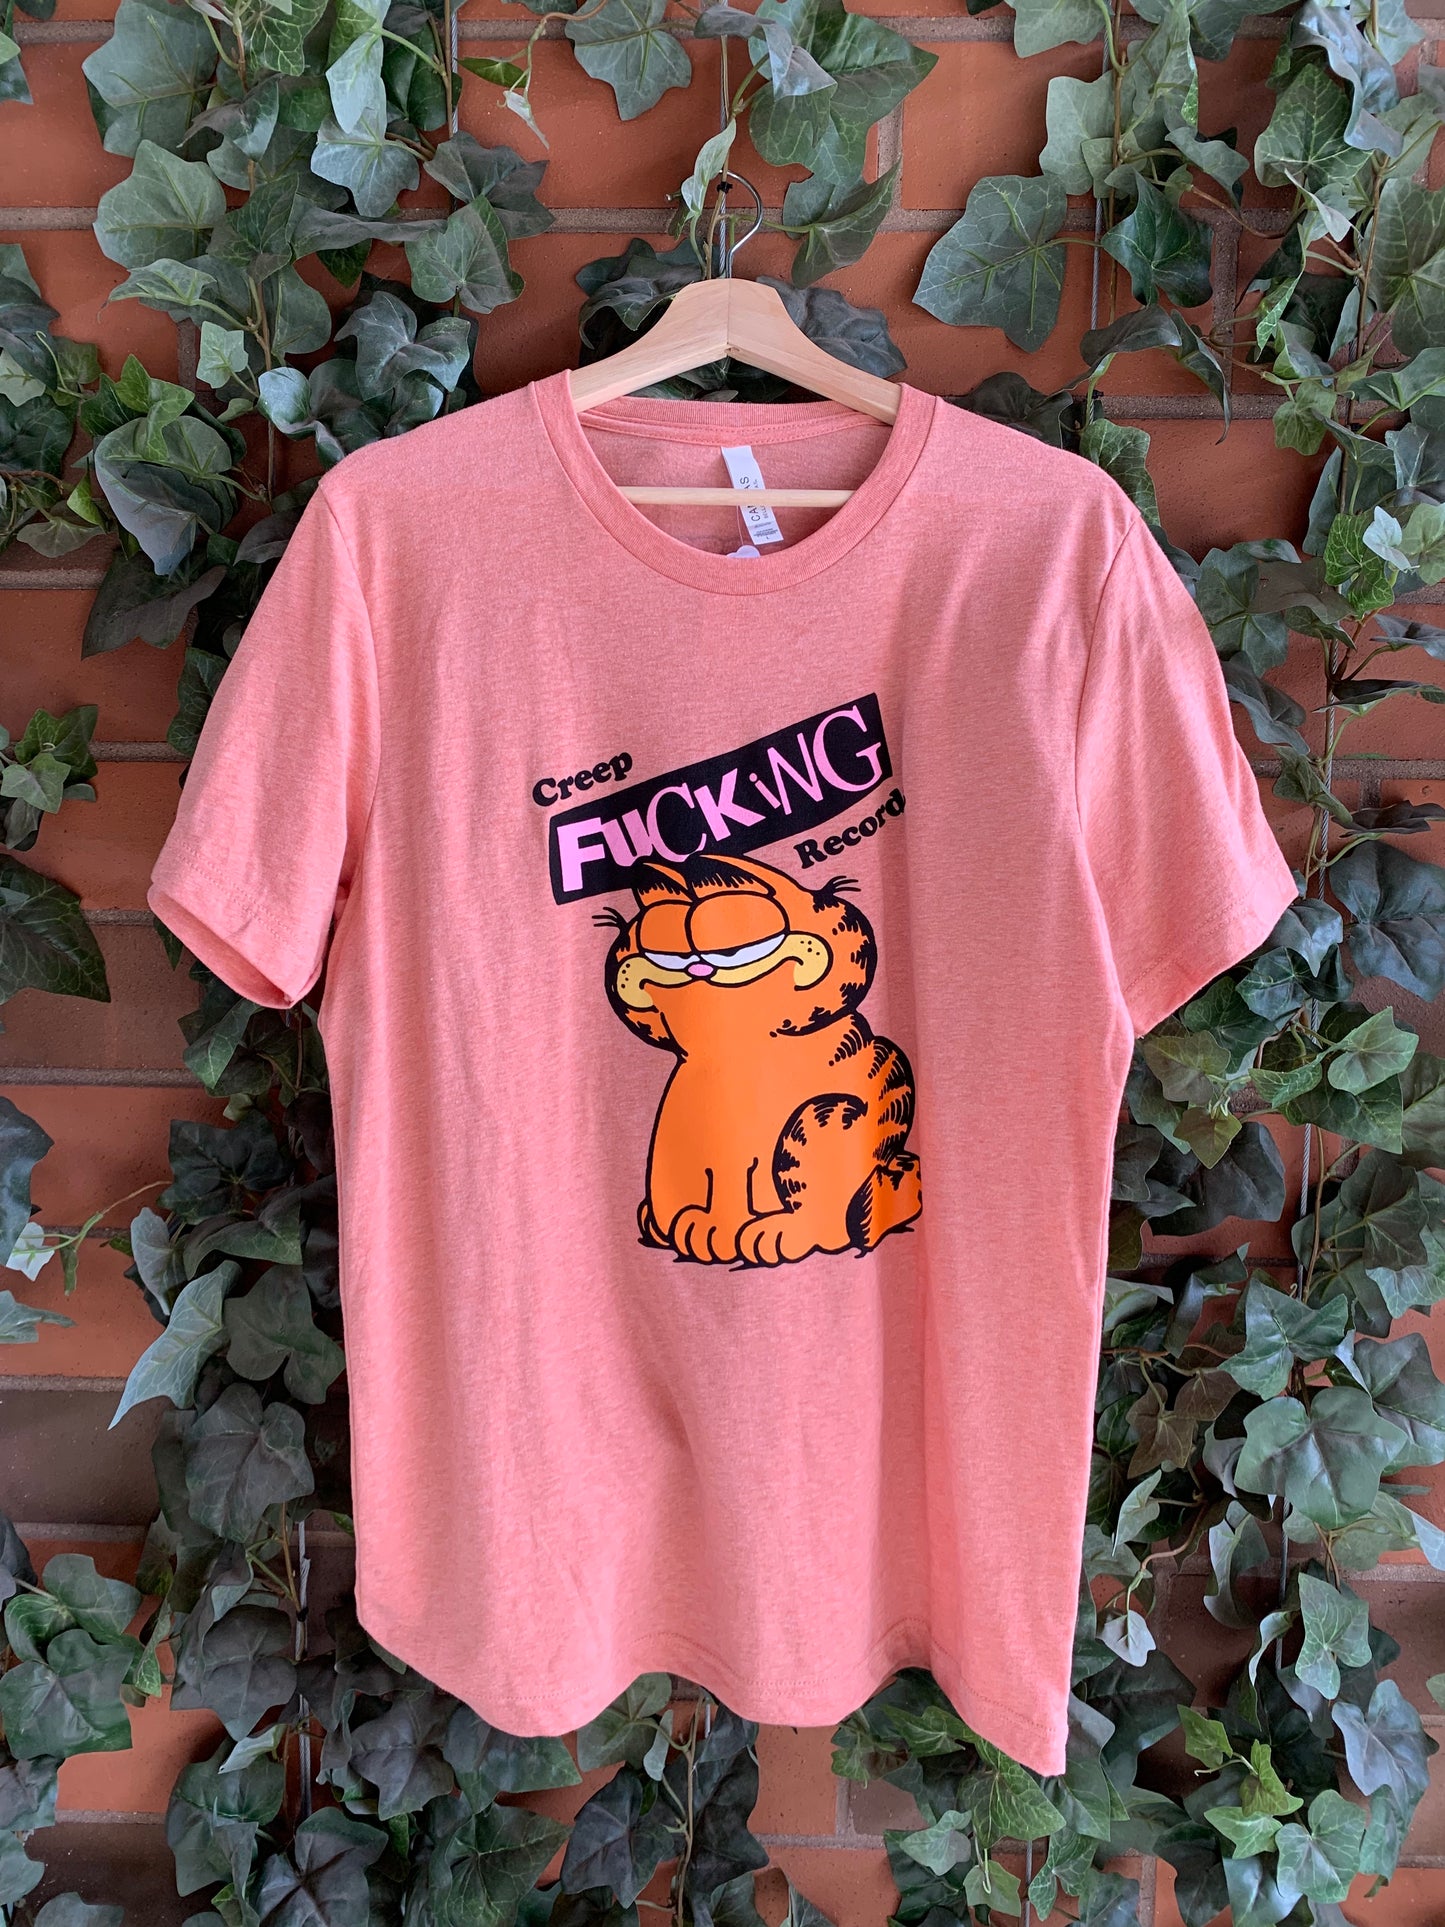 Creep Records Lasagna Cat T-Shirt